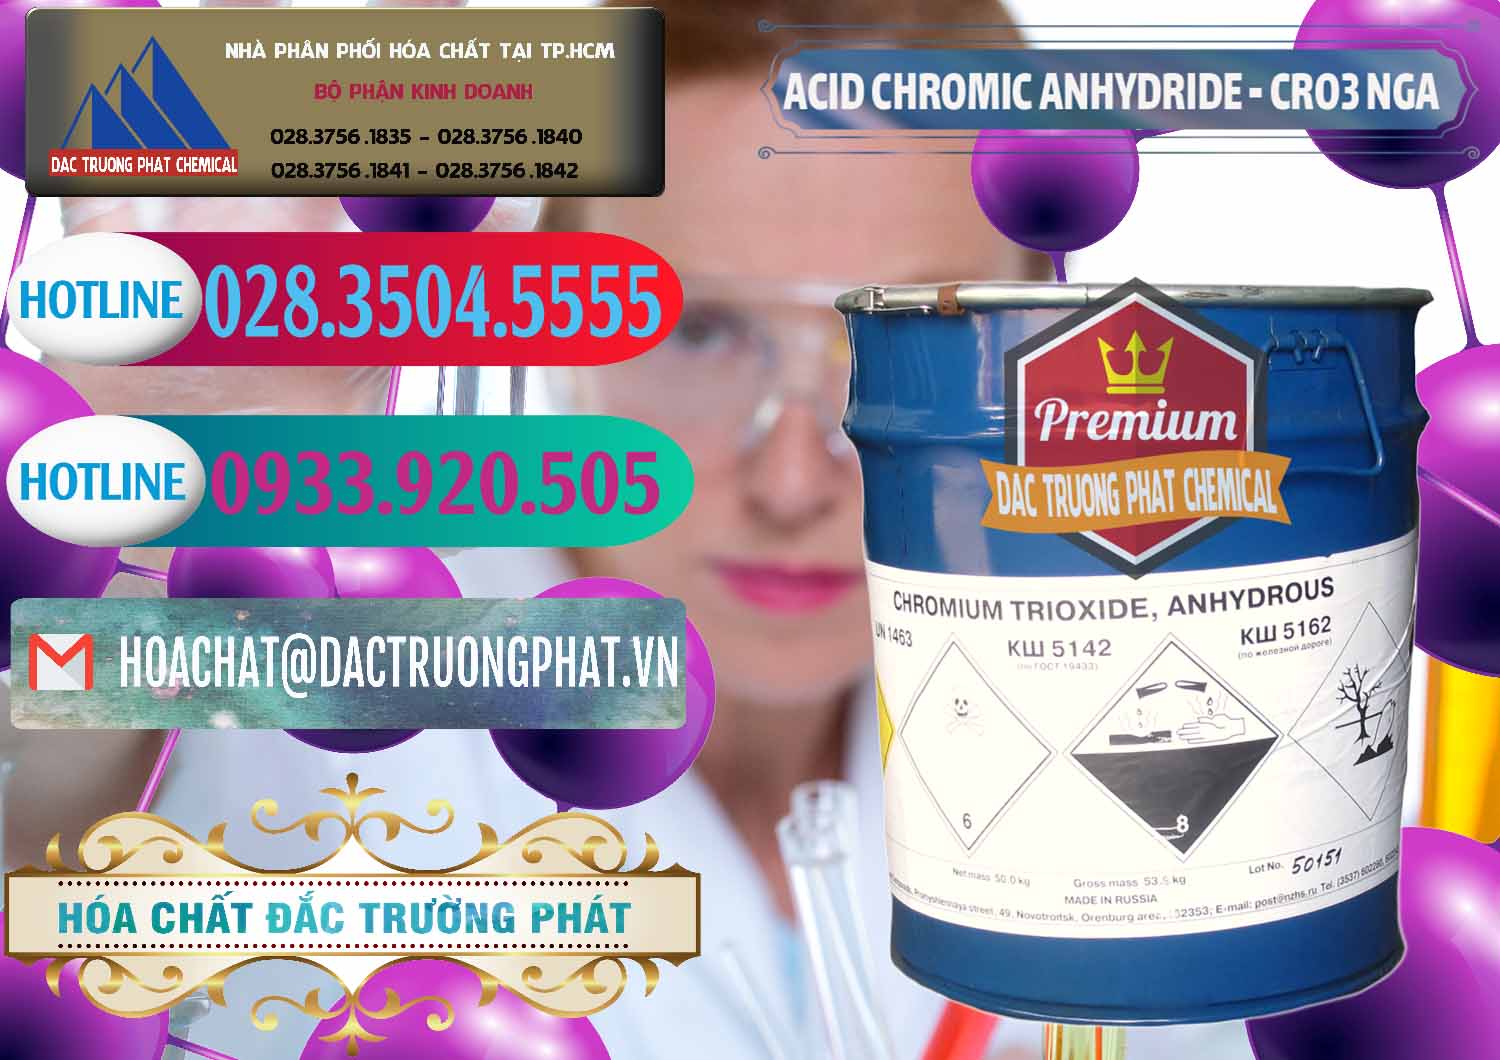 Đơn vị chuyên kinh doanh & bán Acid Chromic Anhydride - Cromic CRO3 Nga Russia - 0006 - Chuyên cung cấp - nhập khẩu hóa chất tại TP.HCM - truongphat.vn